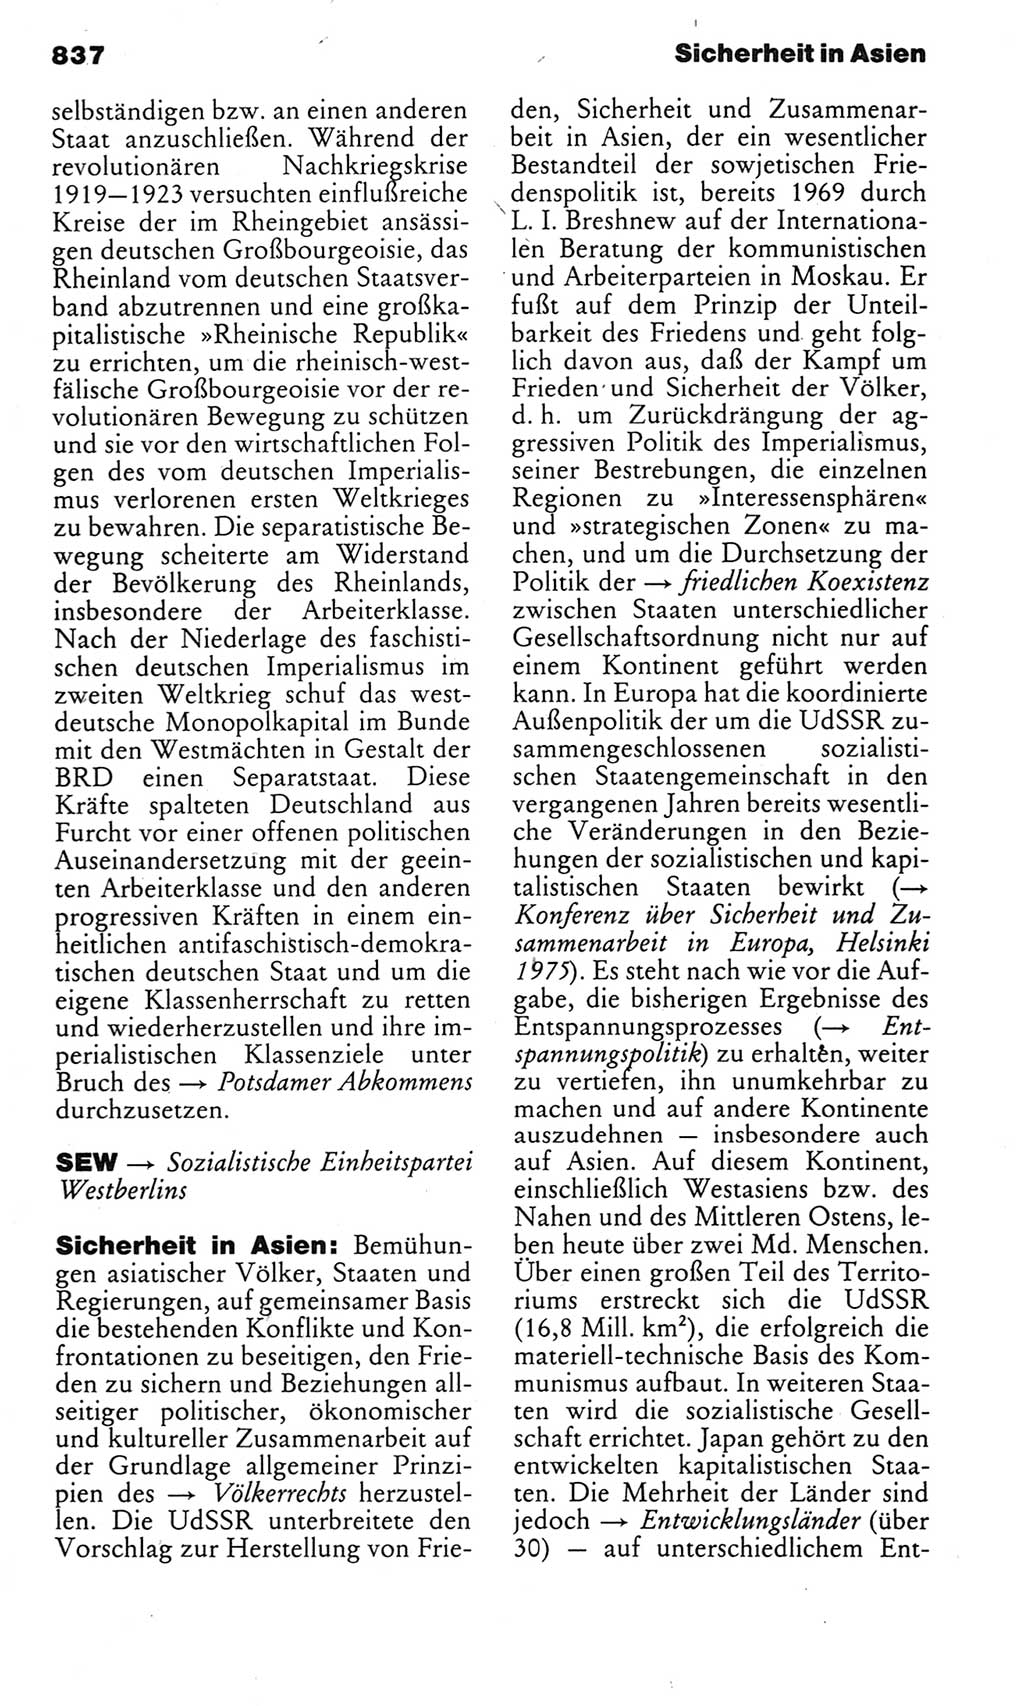 Kleines politisches Wörterbuch [Deutsche Demokratische Republik (DDR)] 1983, Seite 837 (Kl. pol. Wb. DDR 1983, S. 837)